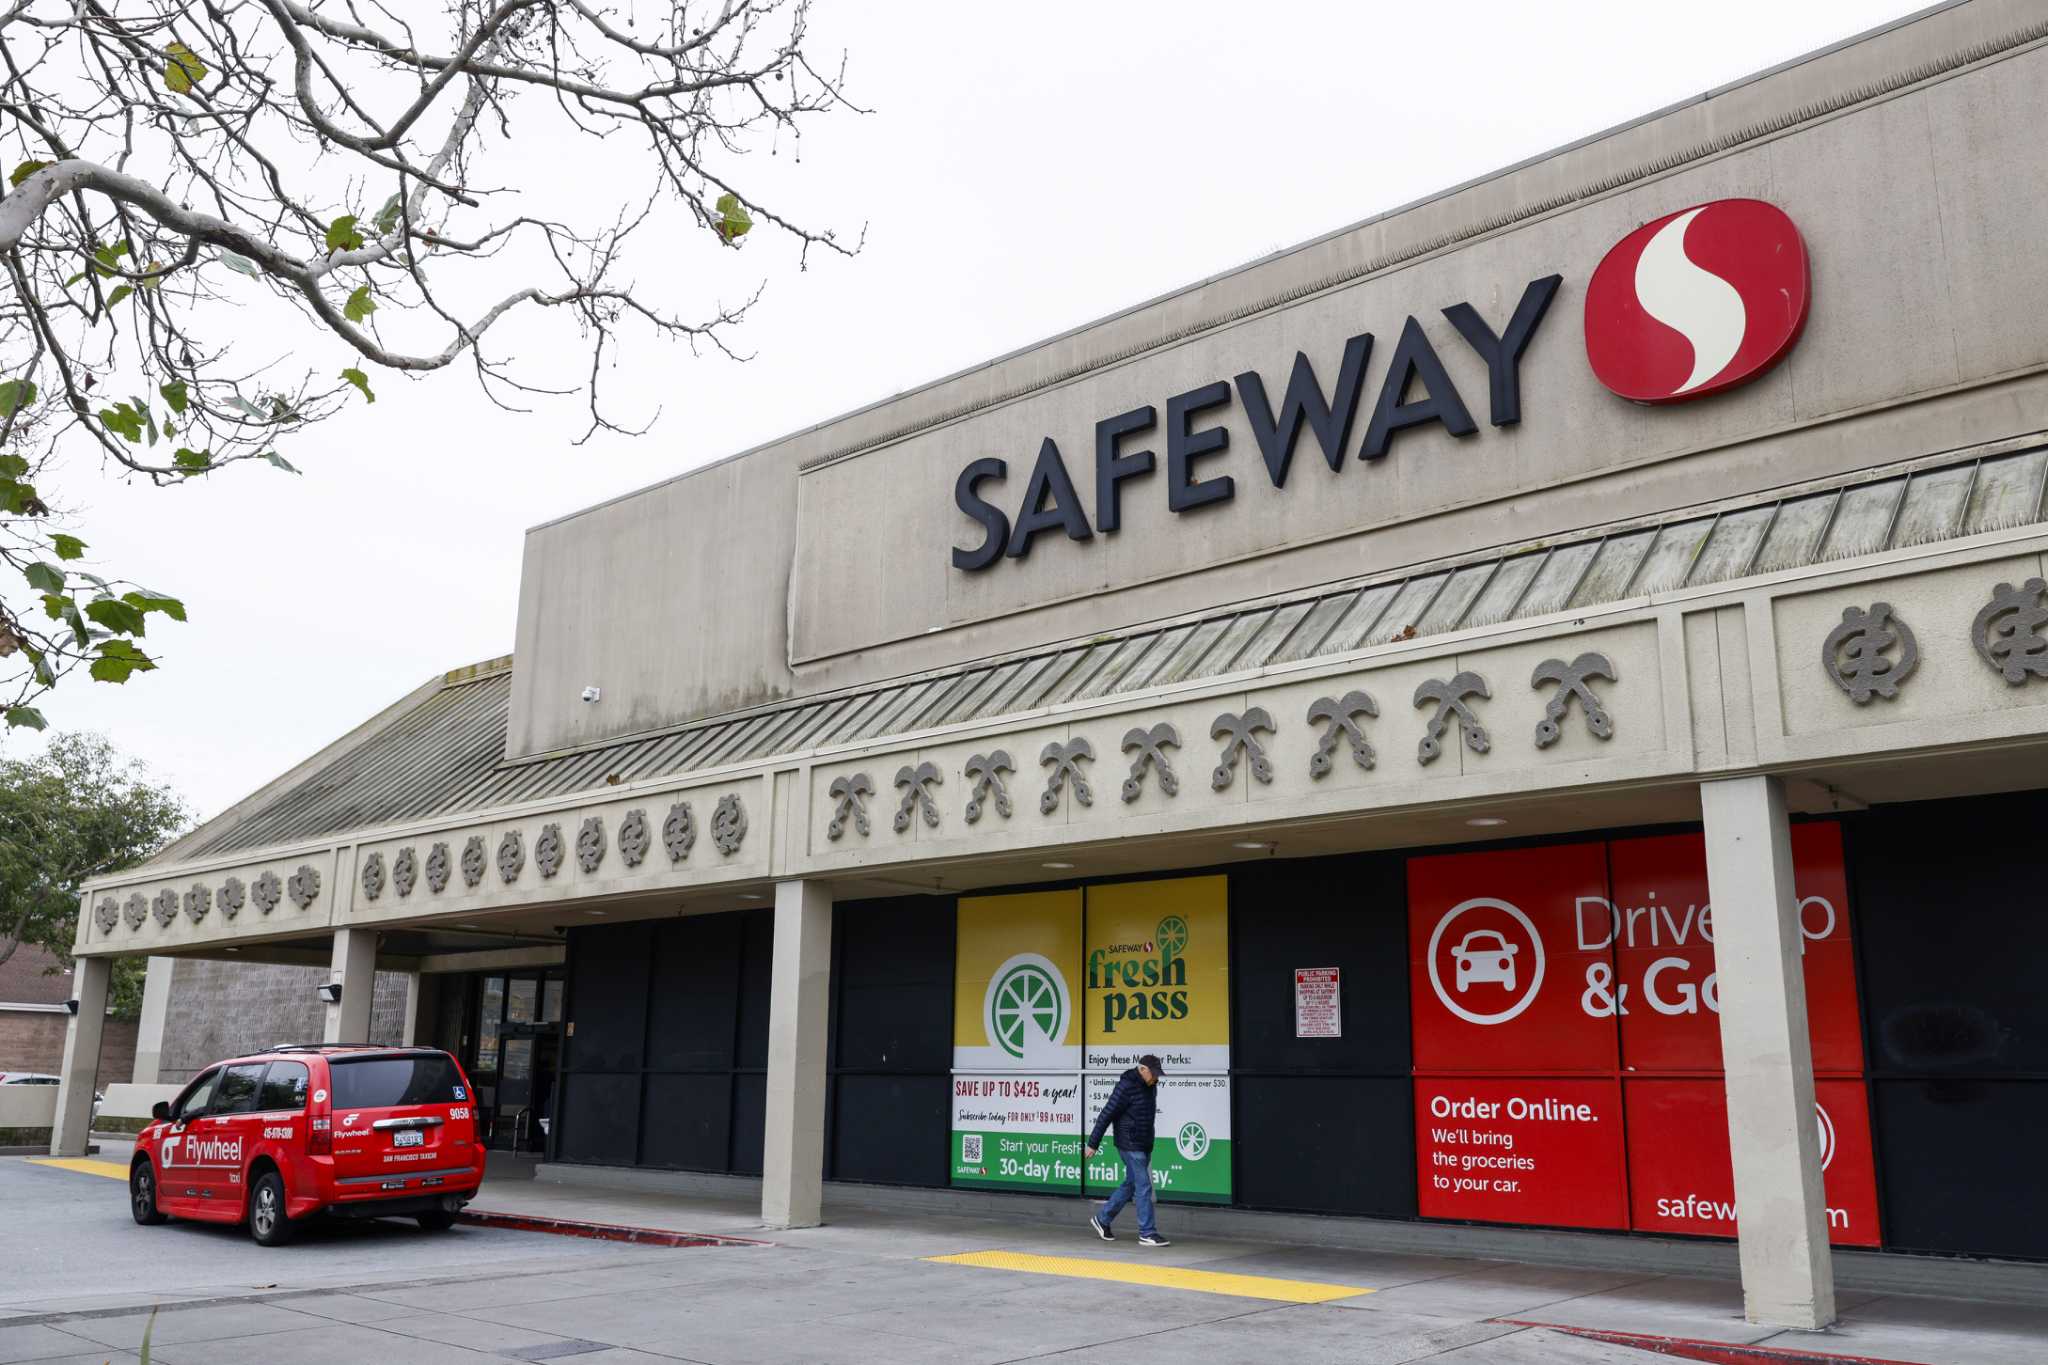 La problemática vía segura de Fillmore en San Francisco permanecerá abierta hasta 2025